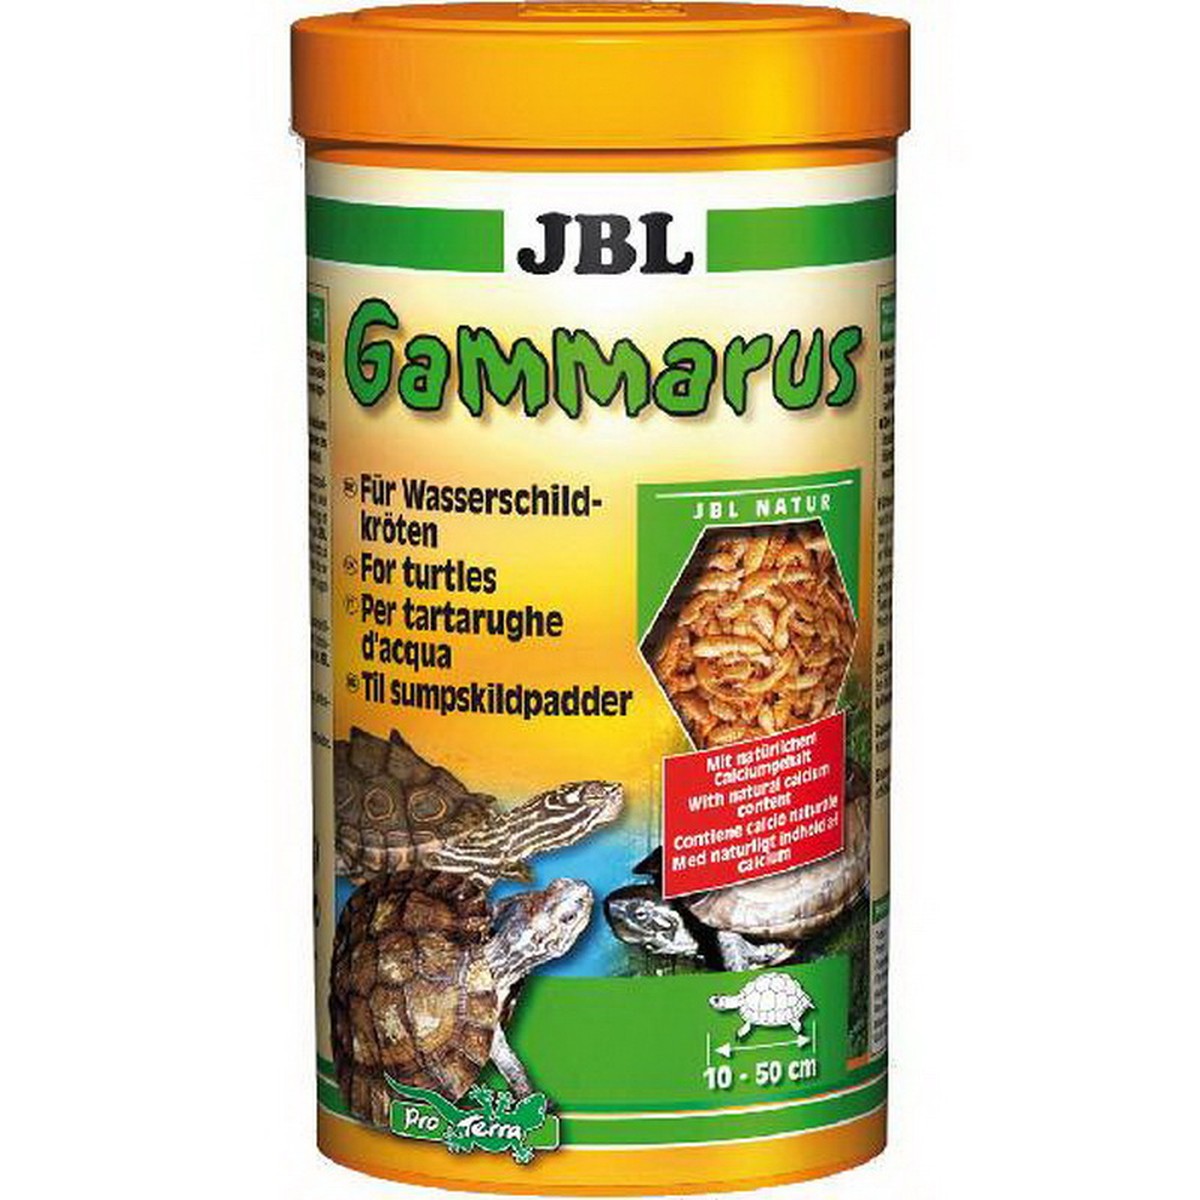   JBL Gammarus 250 ml F/NL  250ml